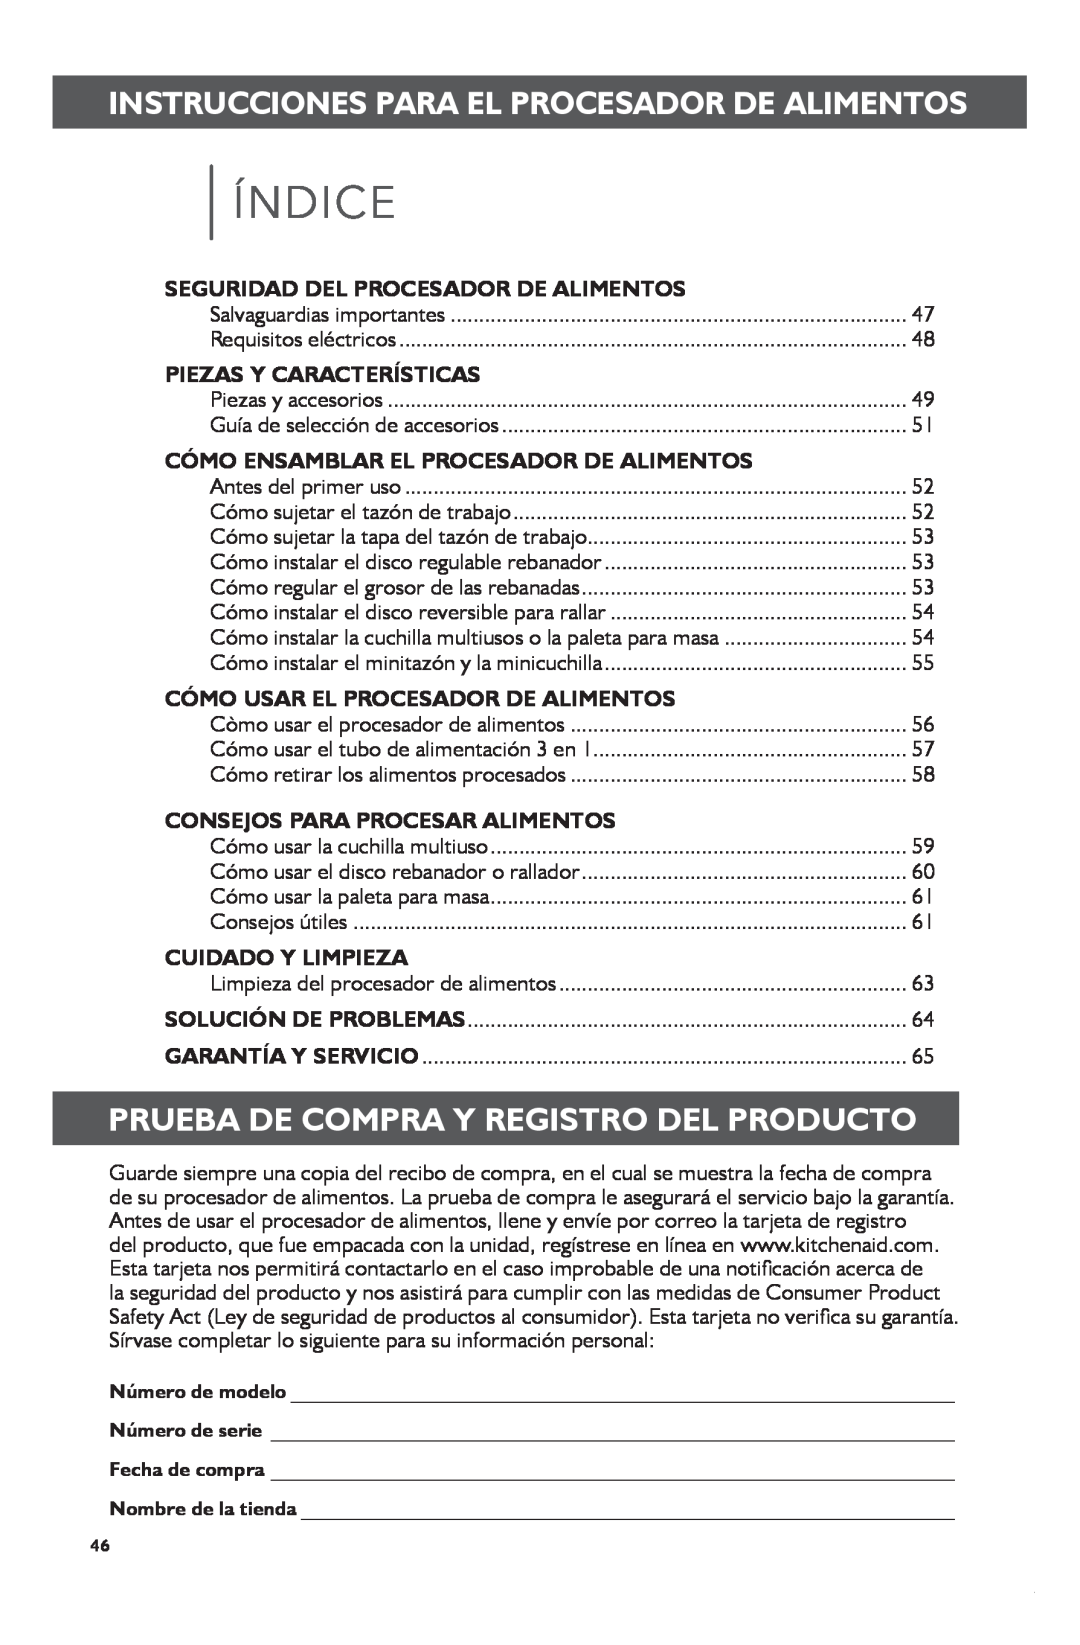 KitchenAid KFP1133 manual Índice, Prueba De Compra Y Registro Del Producto, Seguridad Del Procesador De Alimentos 